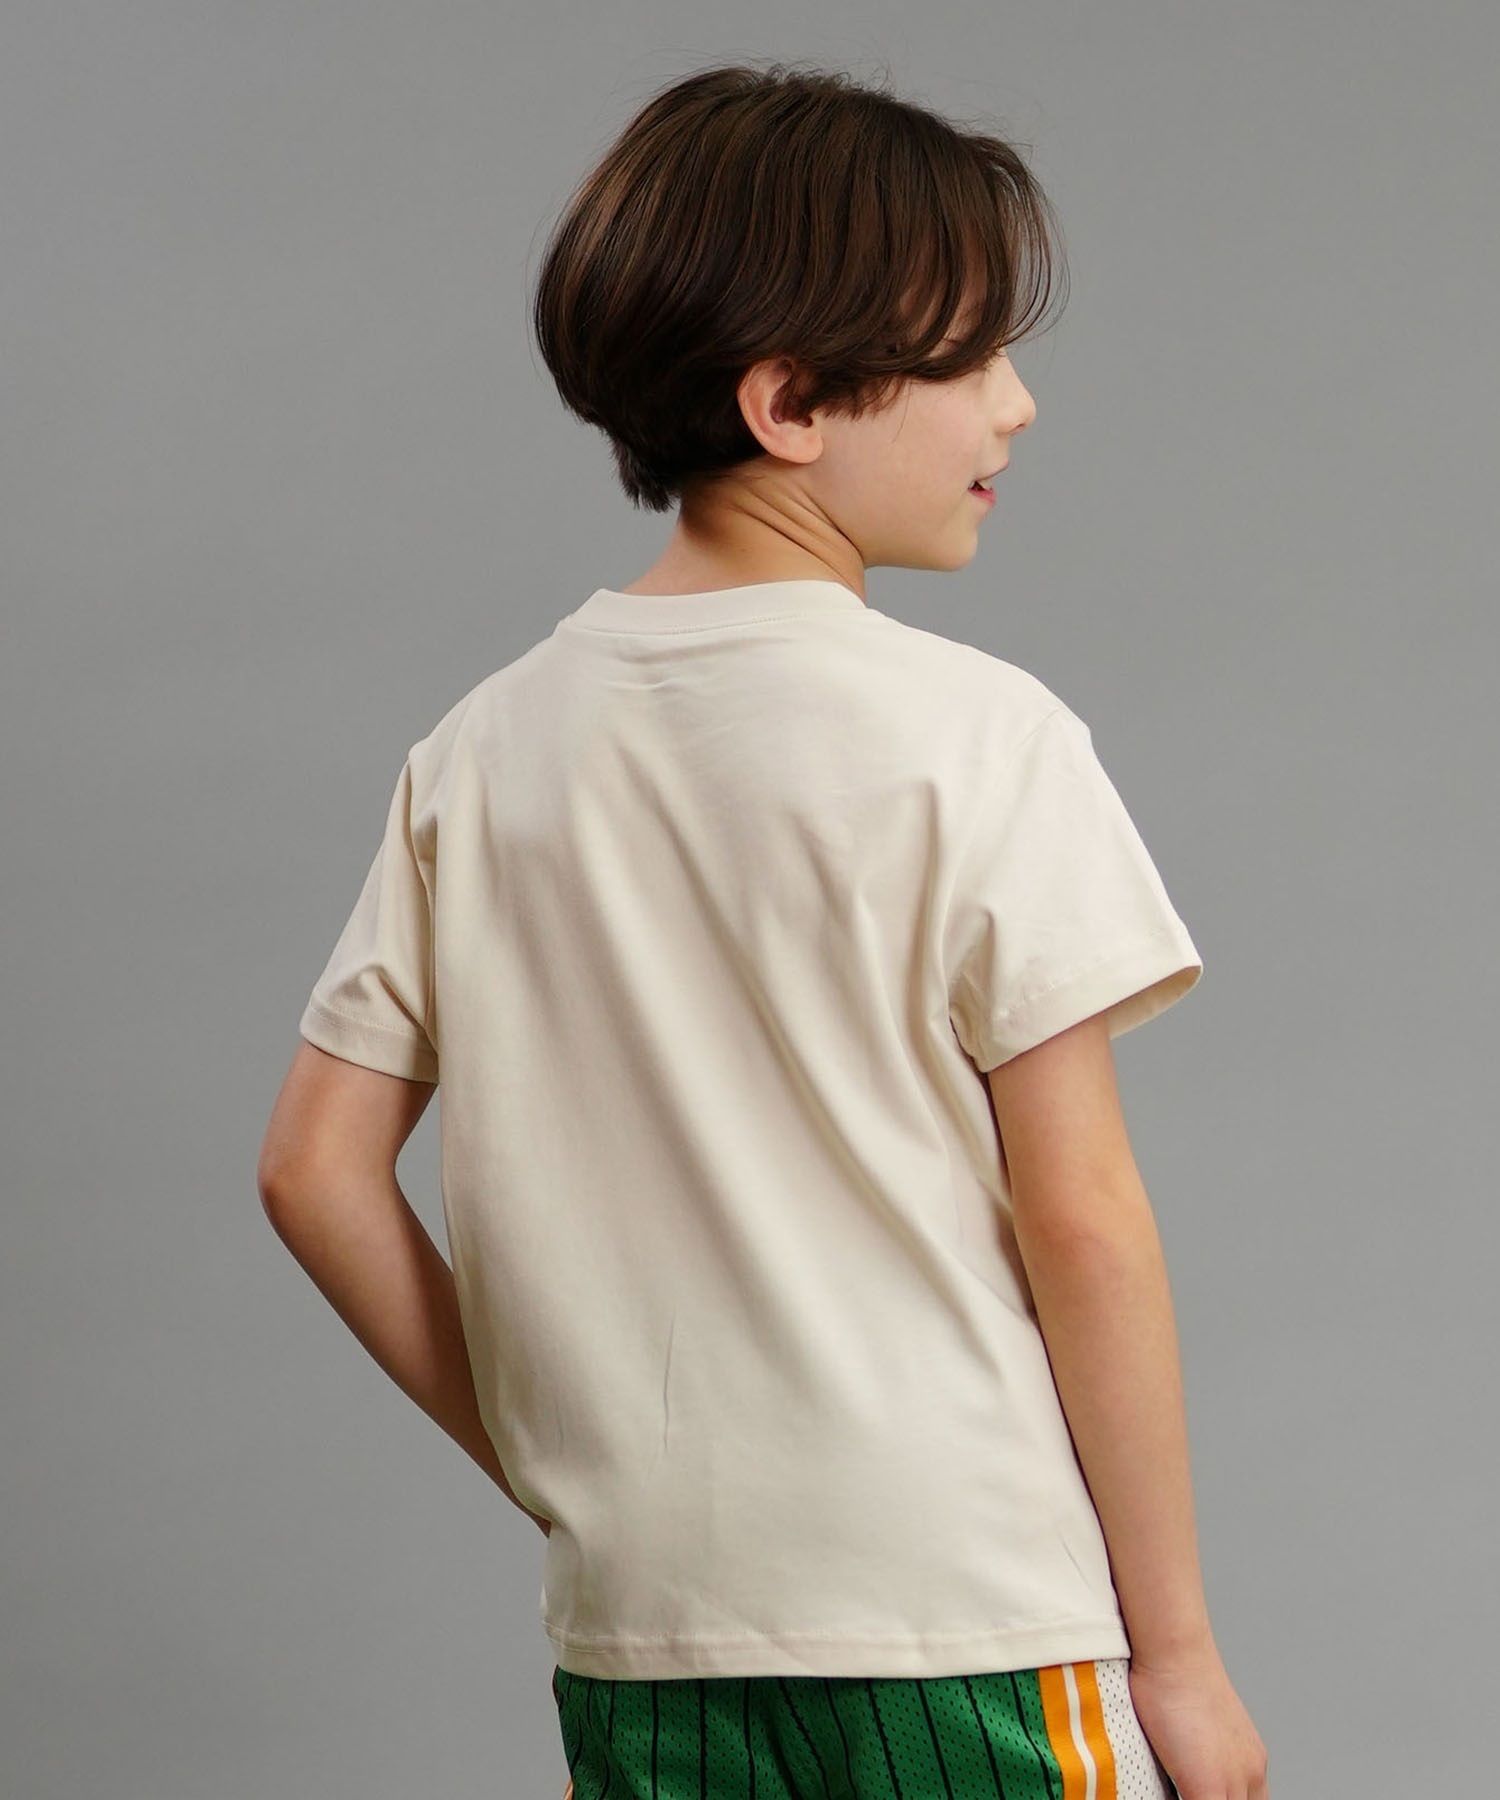 PUMA プーマ ESSプラス MID 90S MX キッズ 半袖 Tシャツ ボーイズ フロントロゴ 680549(87-130cm)